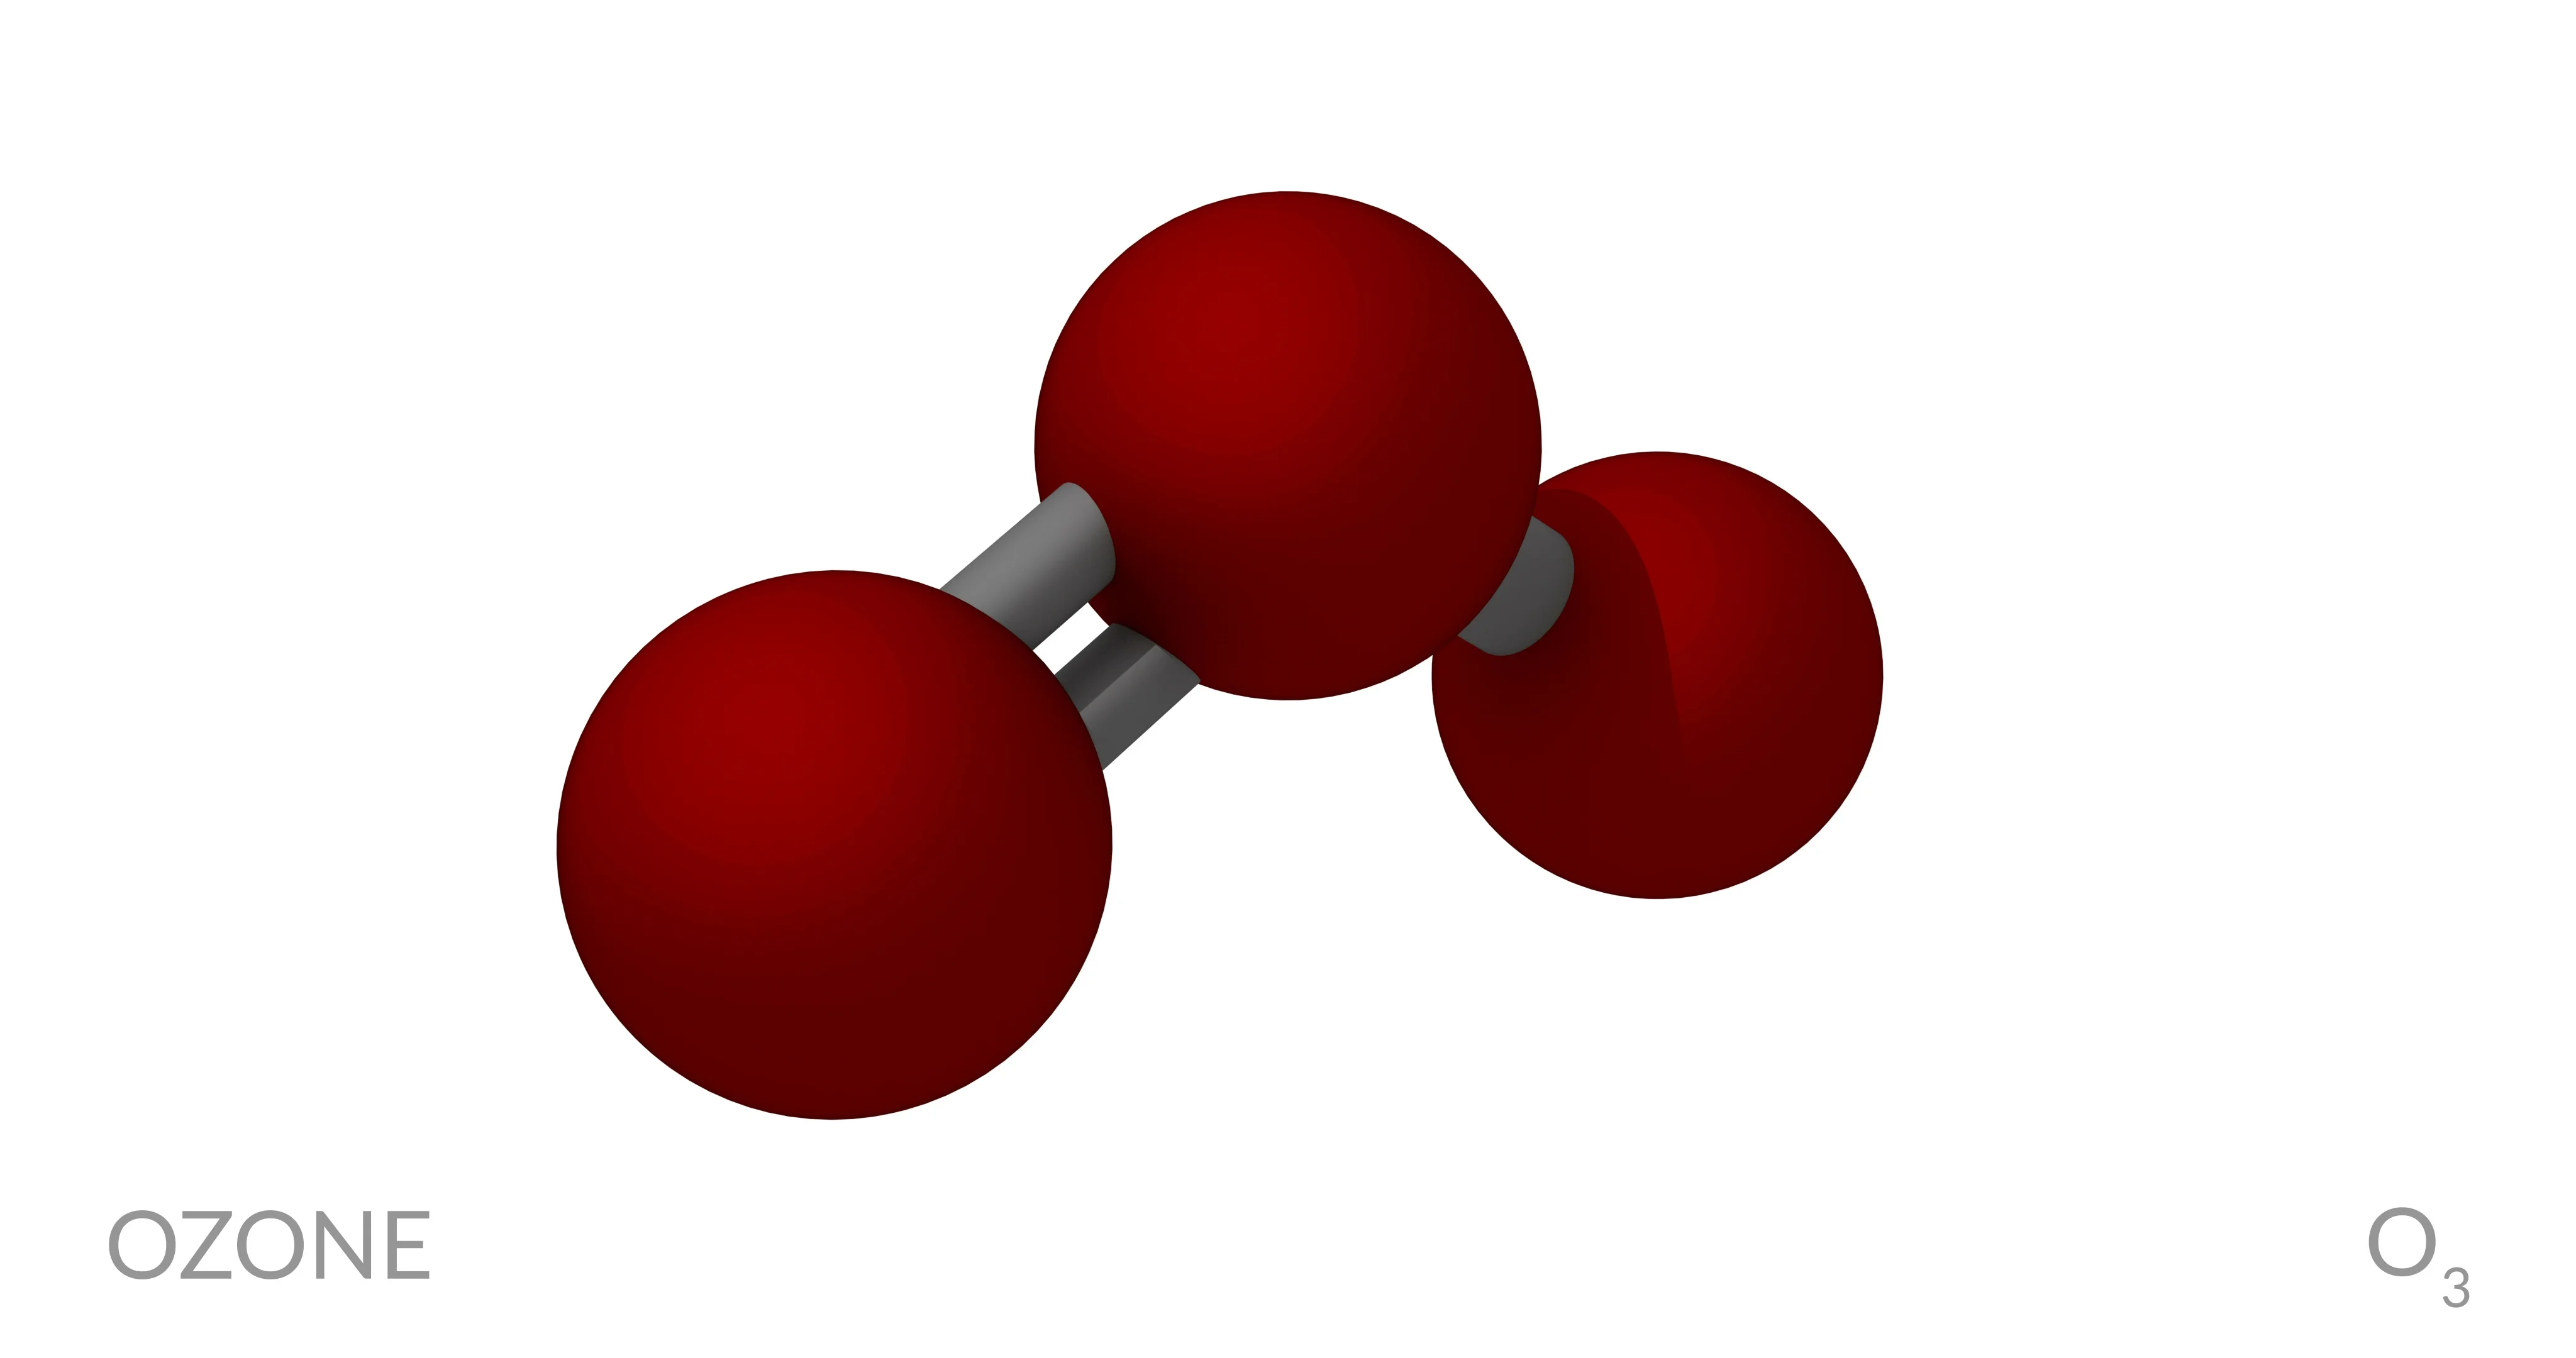 ozone molecule